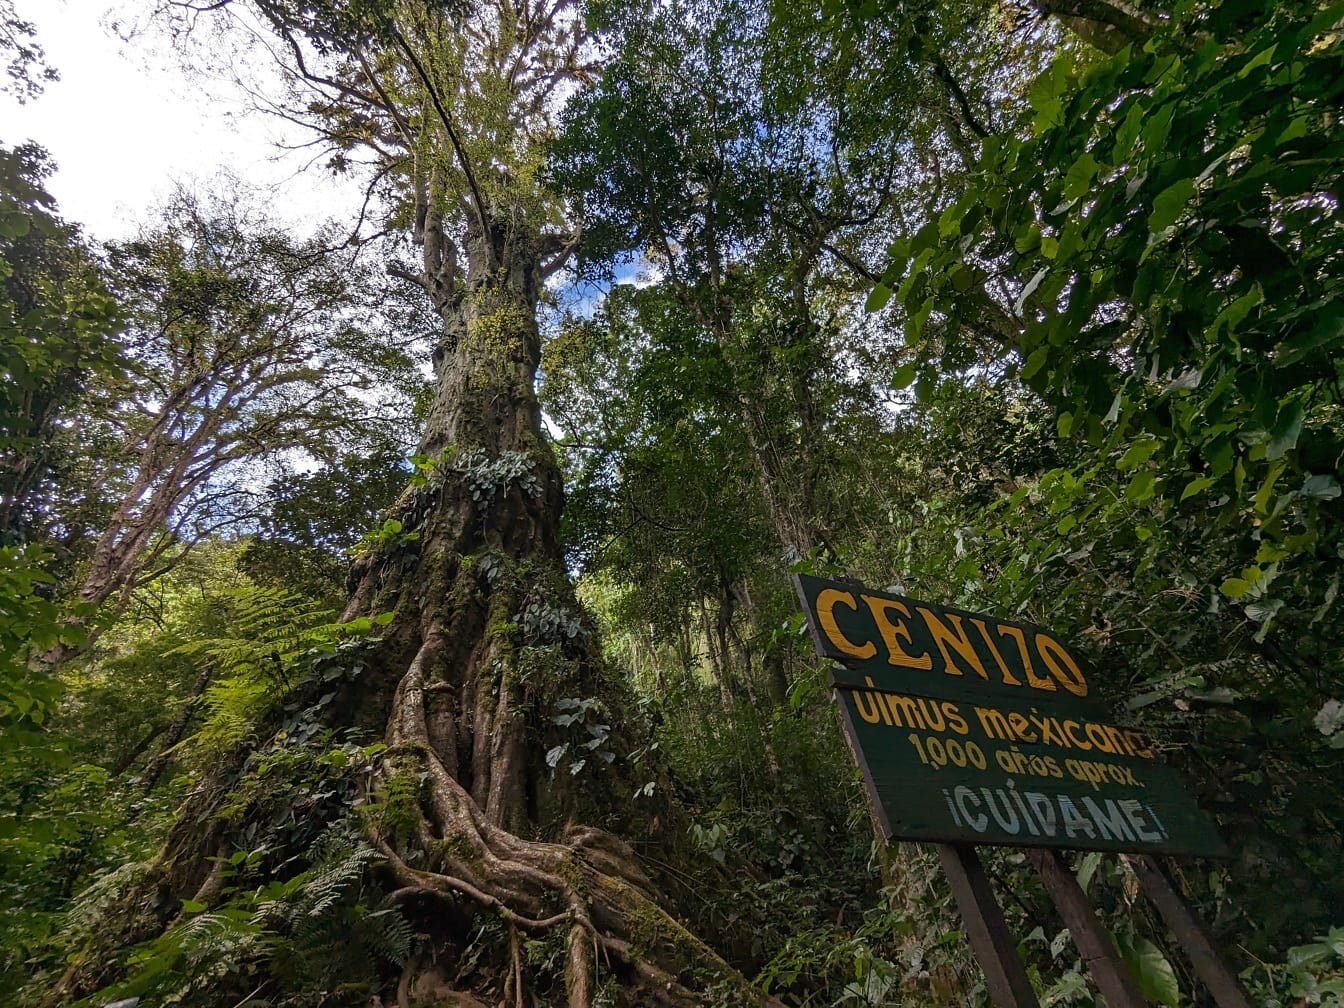 Meksika karaağacı (Ulmus mexicana) 1000 yıllık ağaç, Meksika Orta Amerika’ya endemik bir tür